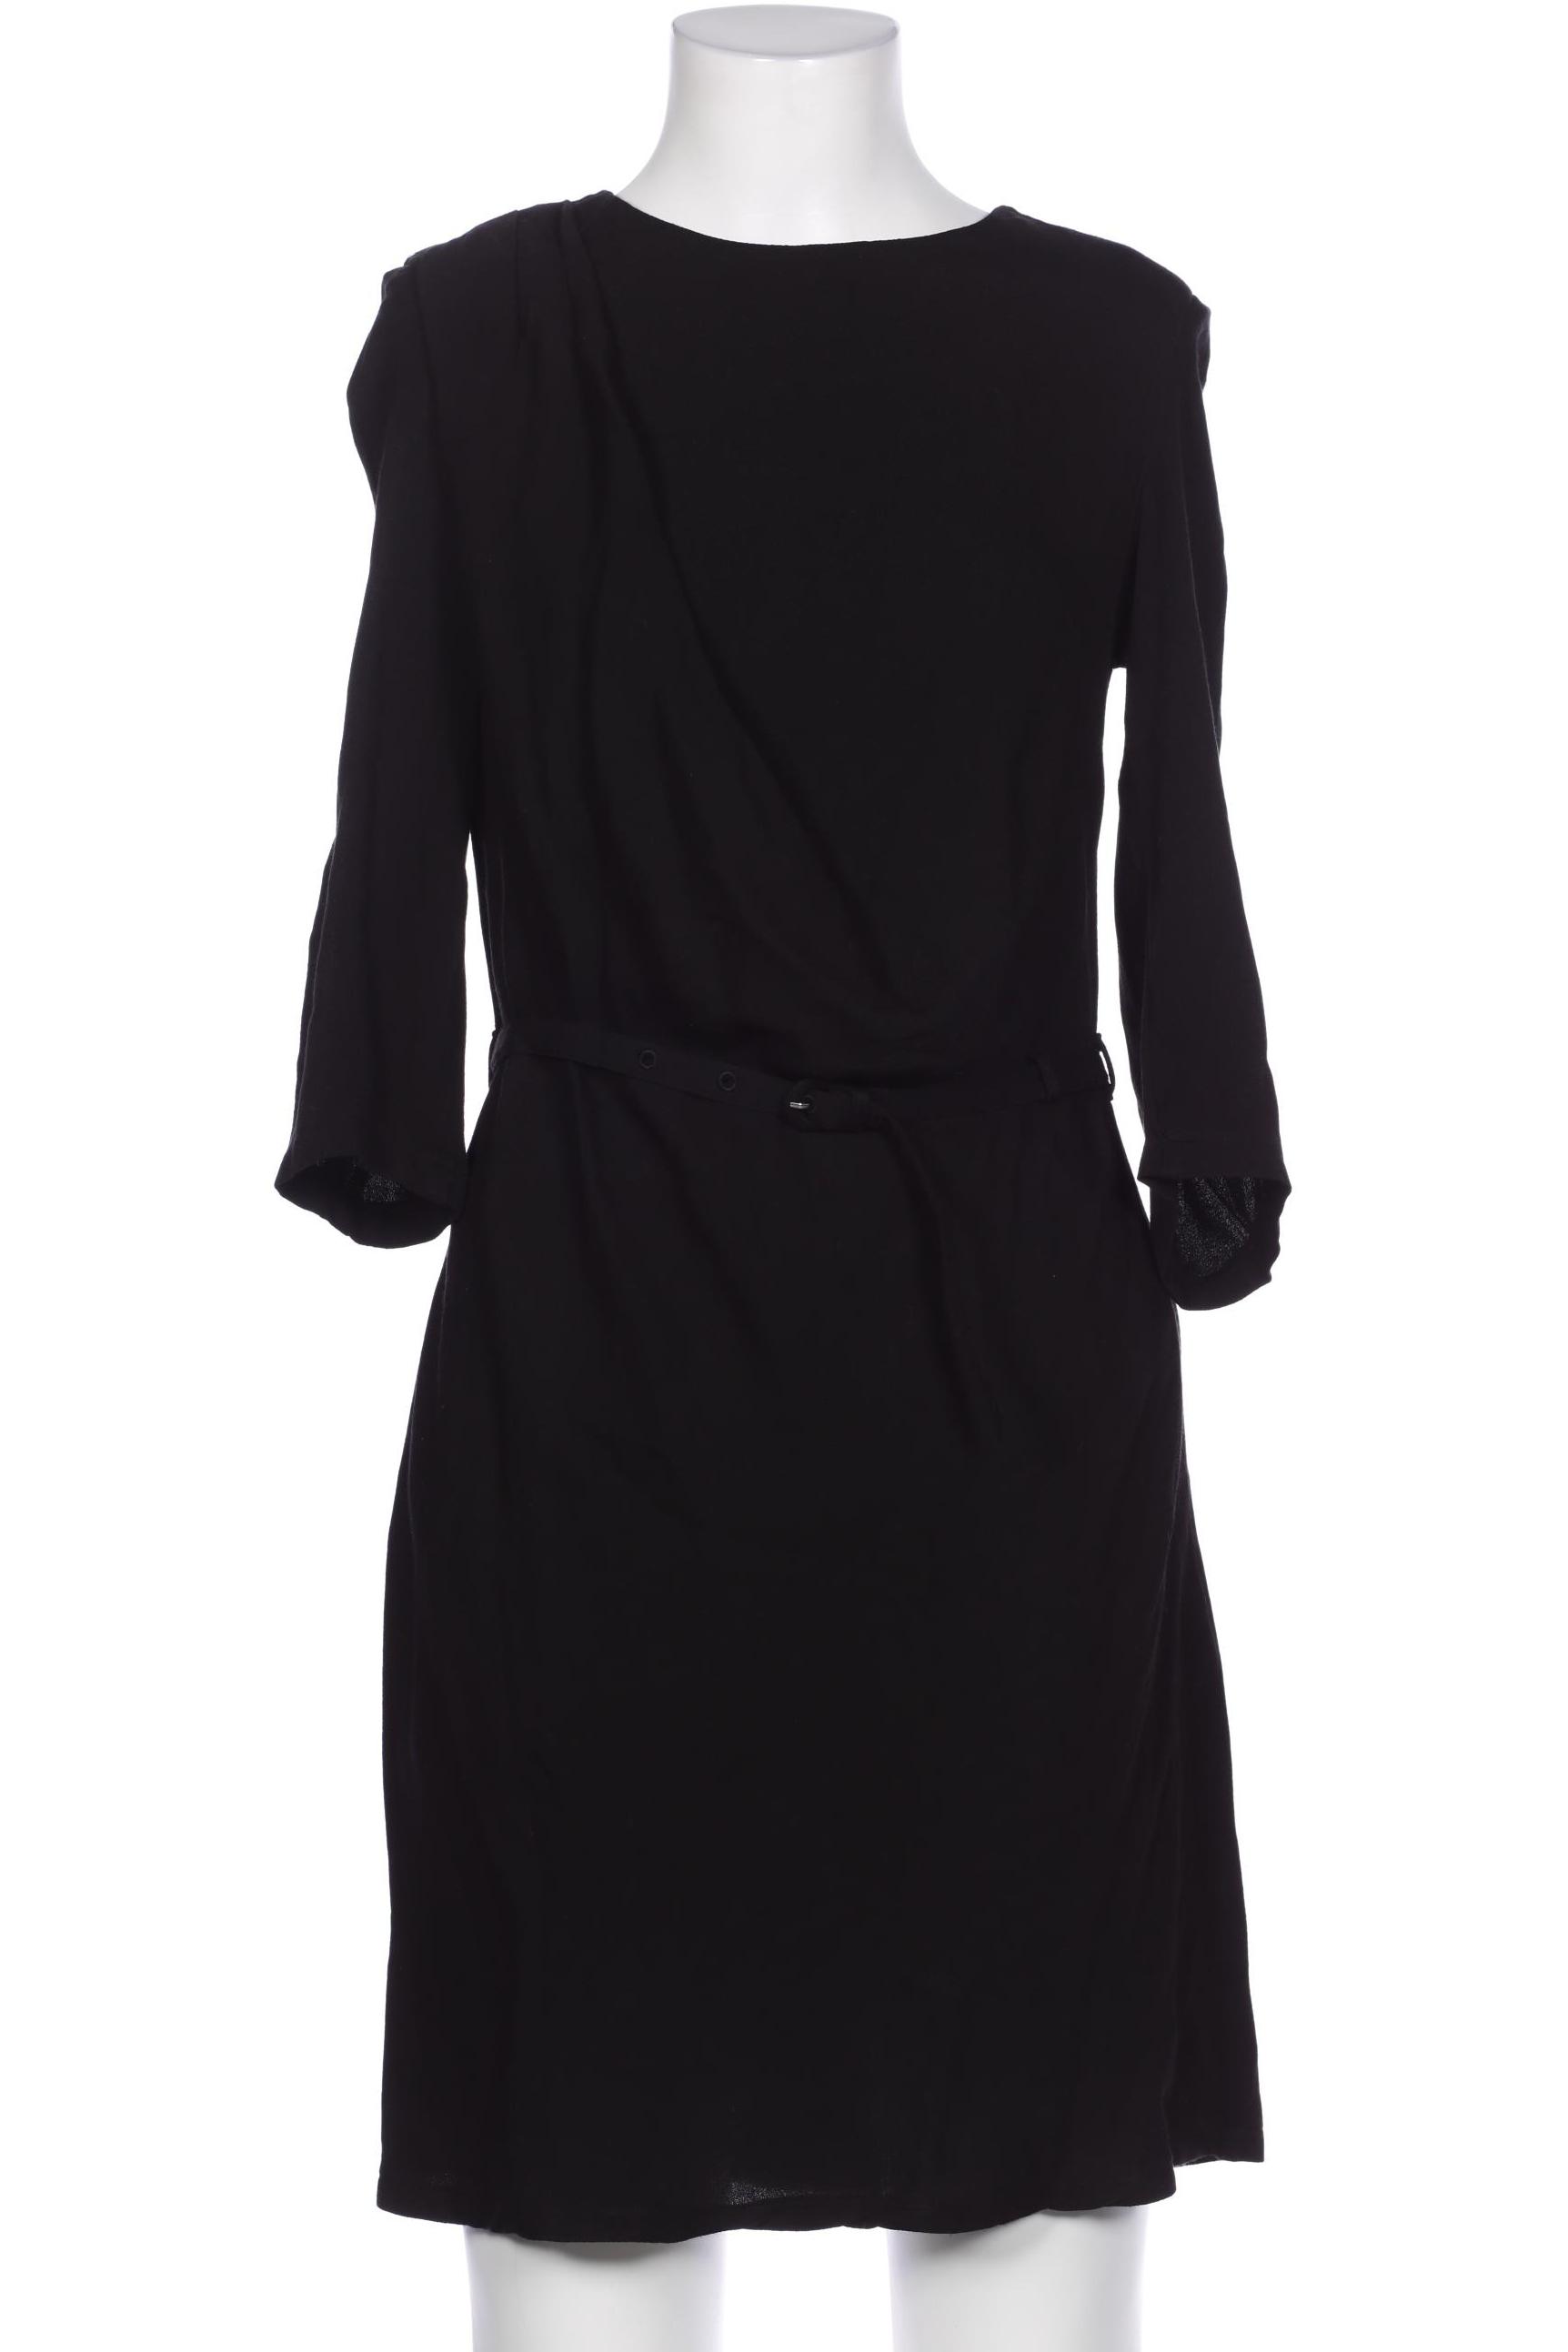 Zero Damen Kleid, schwarz, Gr. 34 von Zero